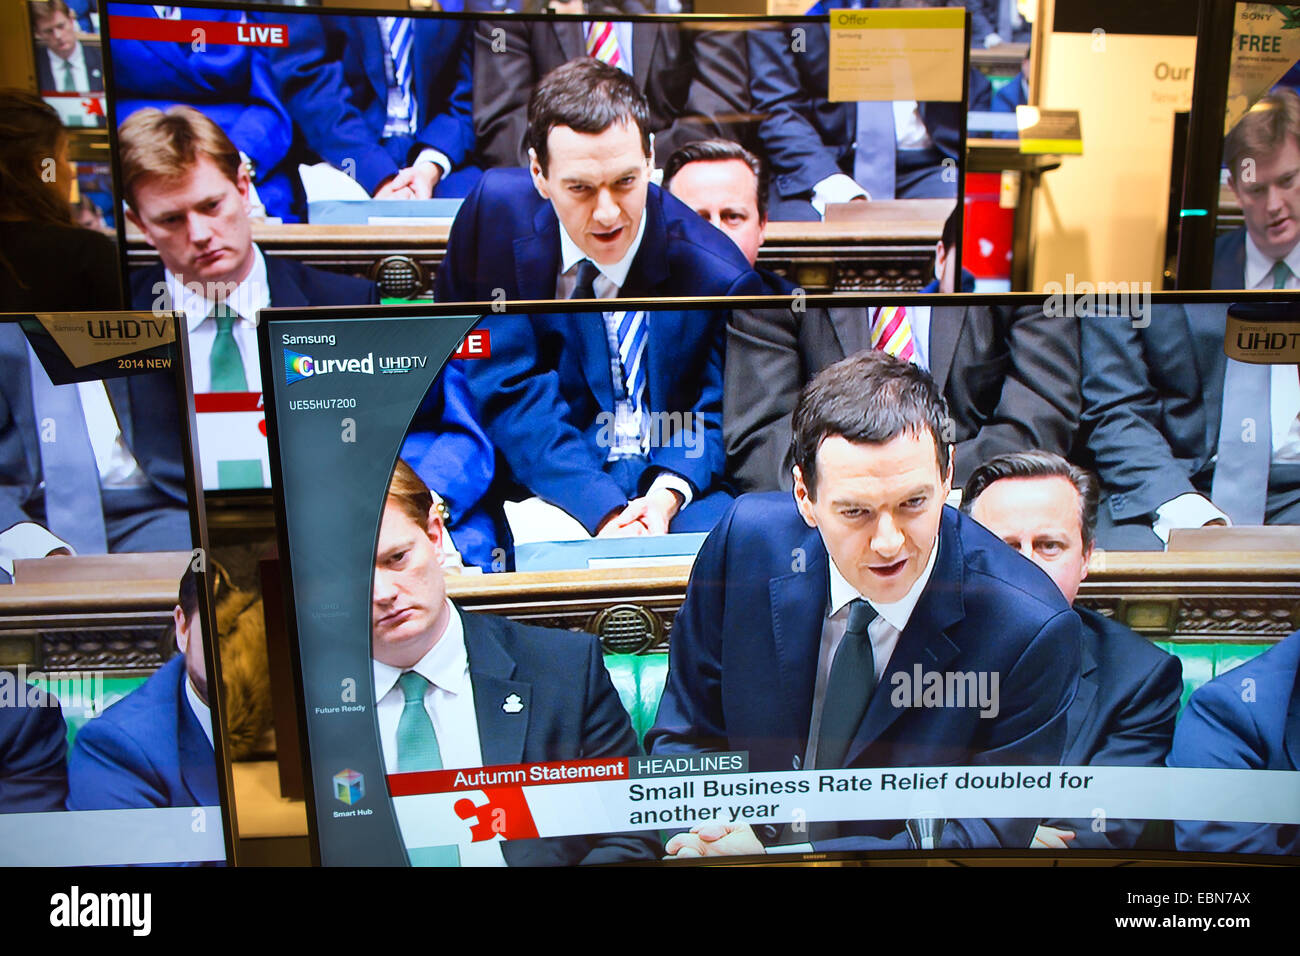 Dichiarazione di autunno il 3° dicembre 2014, London, Regno Unito immagine mostra George Osborne, il Cancelliere dello Scacchiere offrendo la sua dichiarazione d'autunno alla House of Commons mostrato su più televisori in un centro di Londra department store. Foto Stock